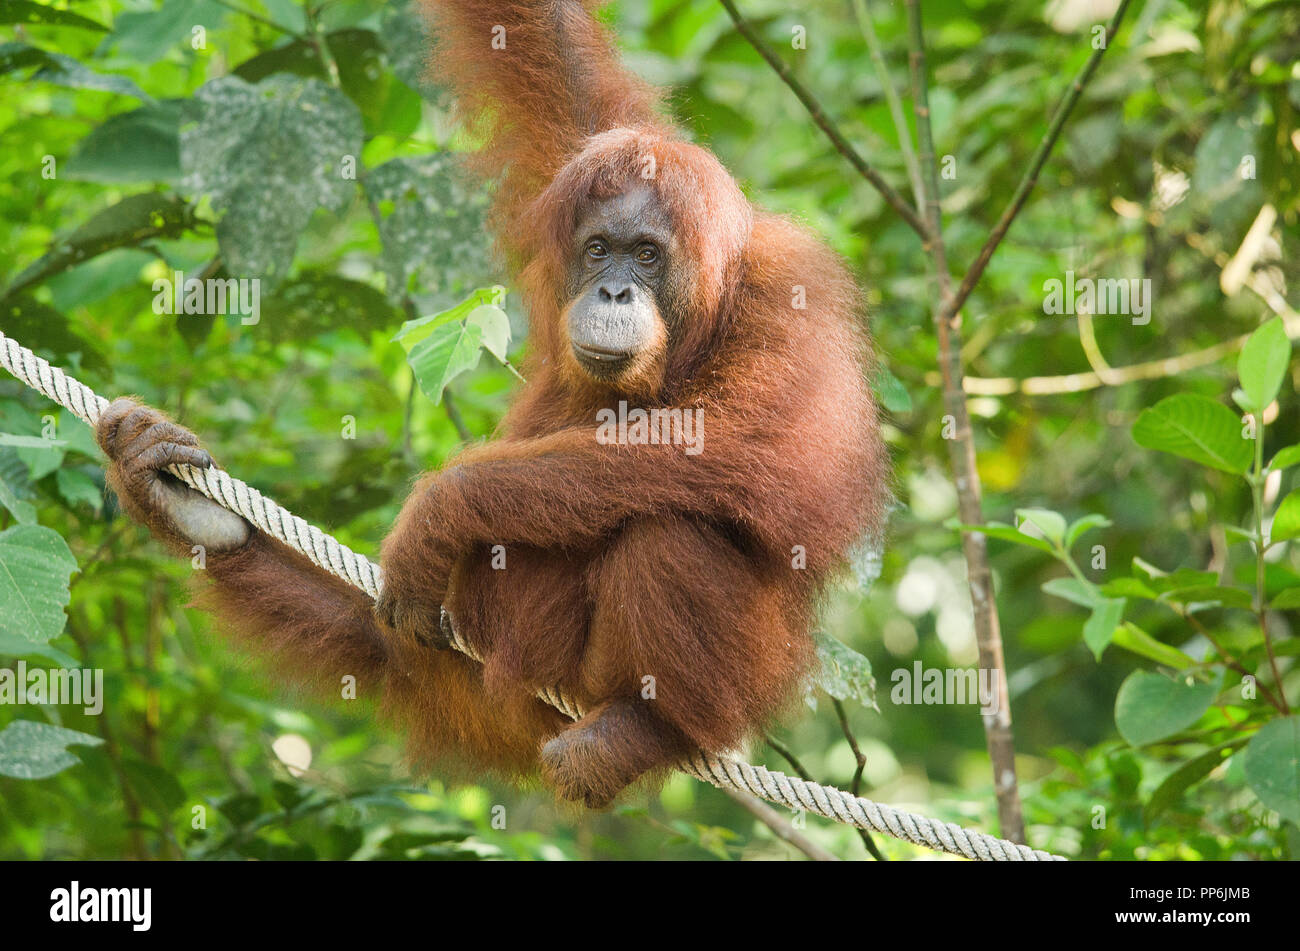 Femmina di orango appeso a un albero guardando la fotocamera Foto Stock